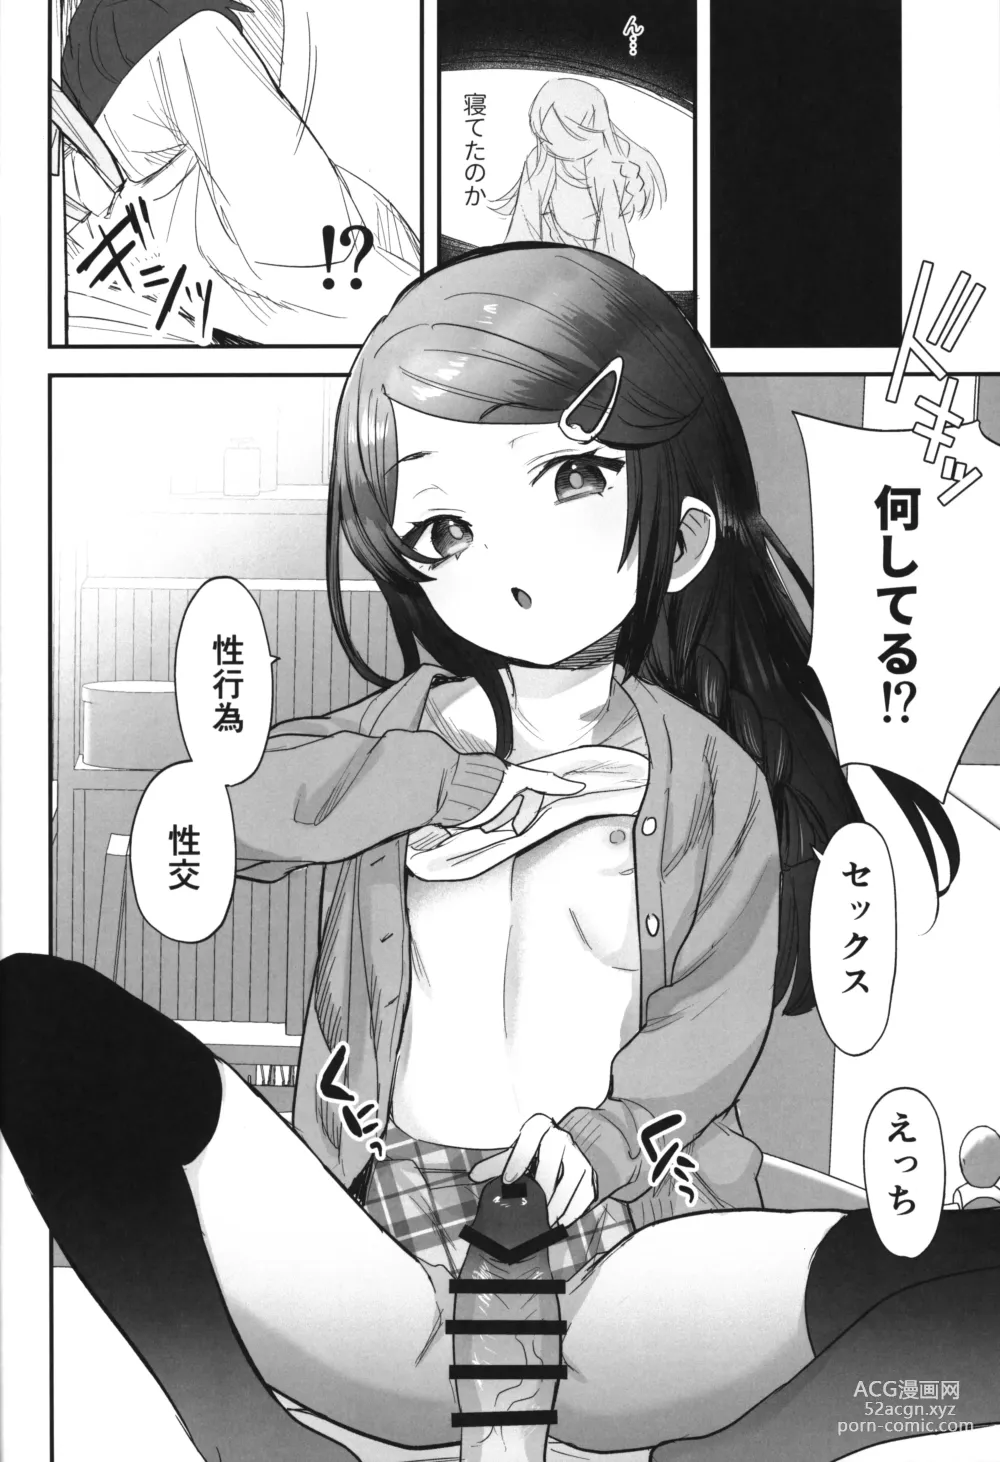 Page 7 of doujinshi Futoukou de Daitensai no Kimi no Ana ga Umaru made